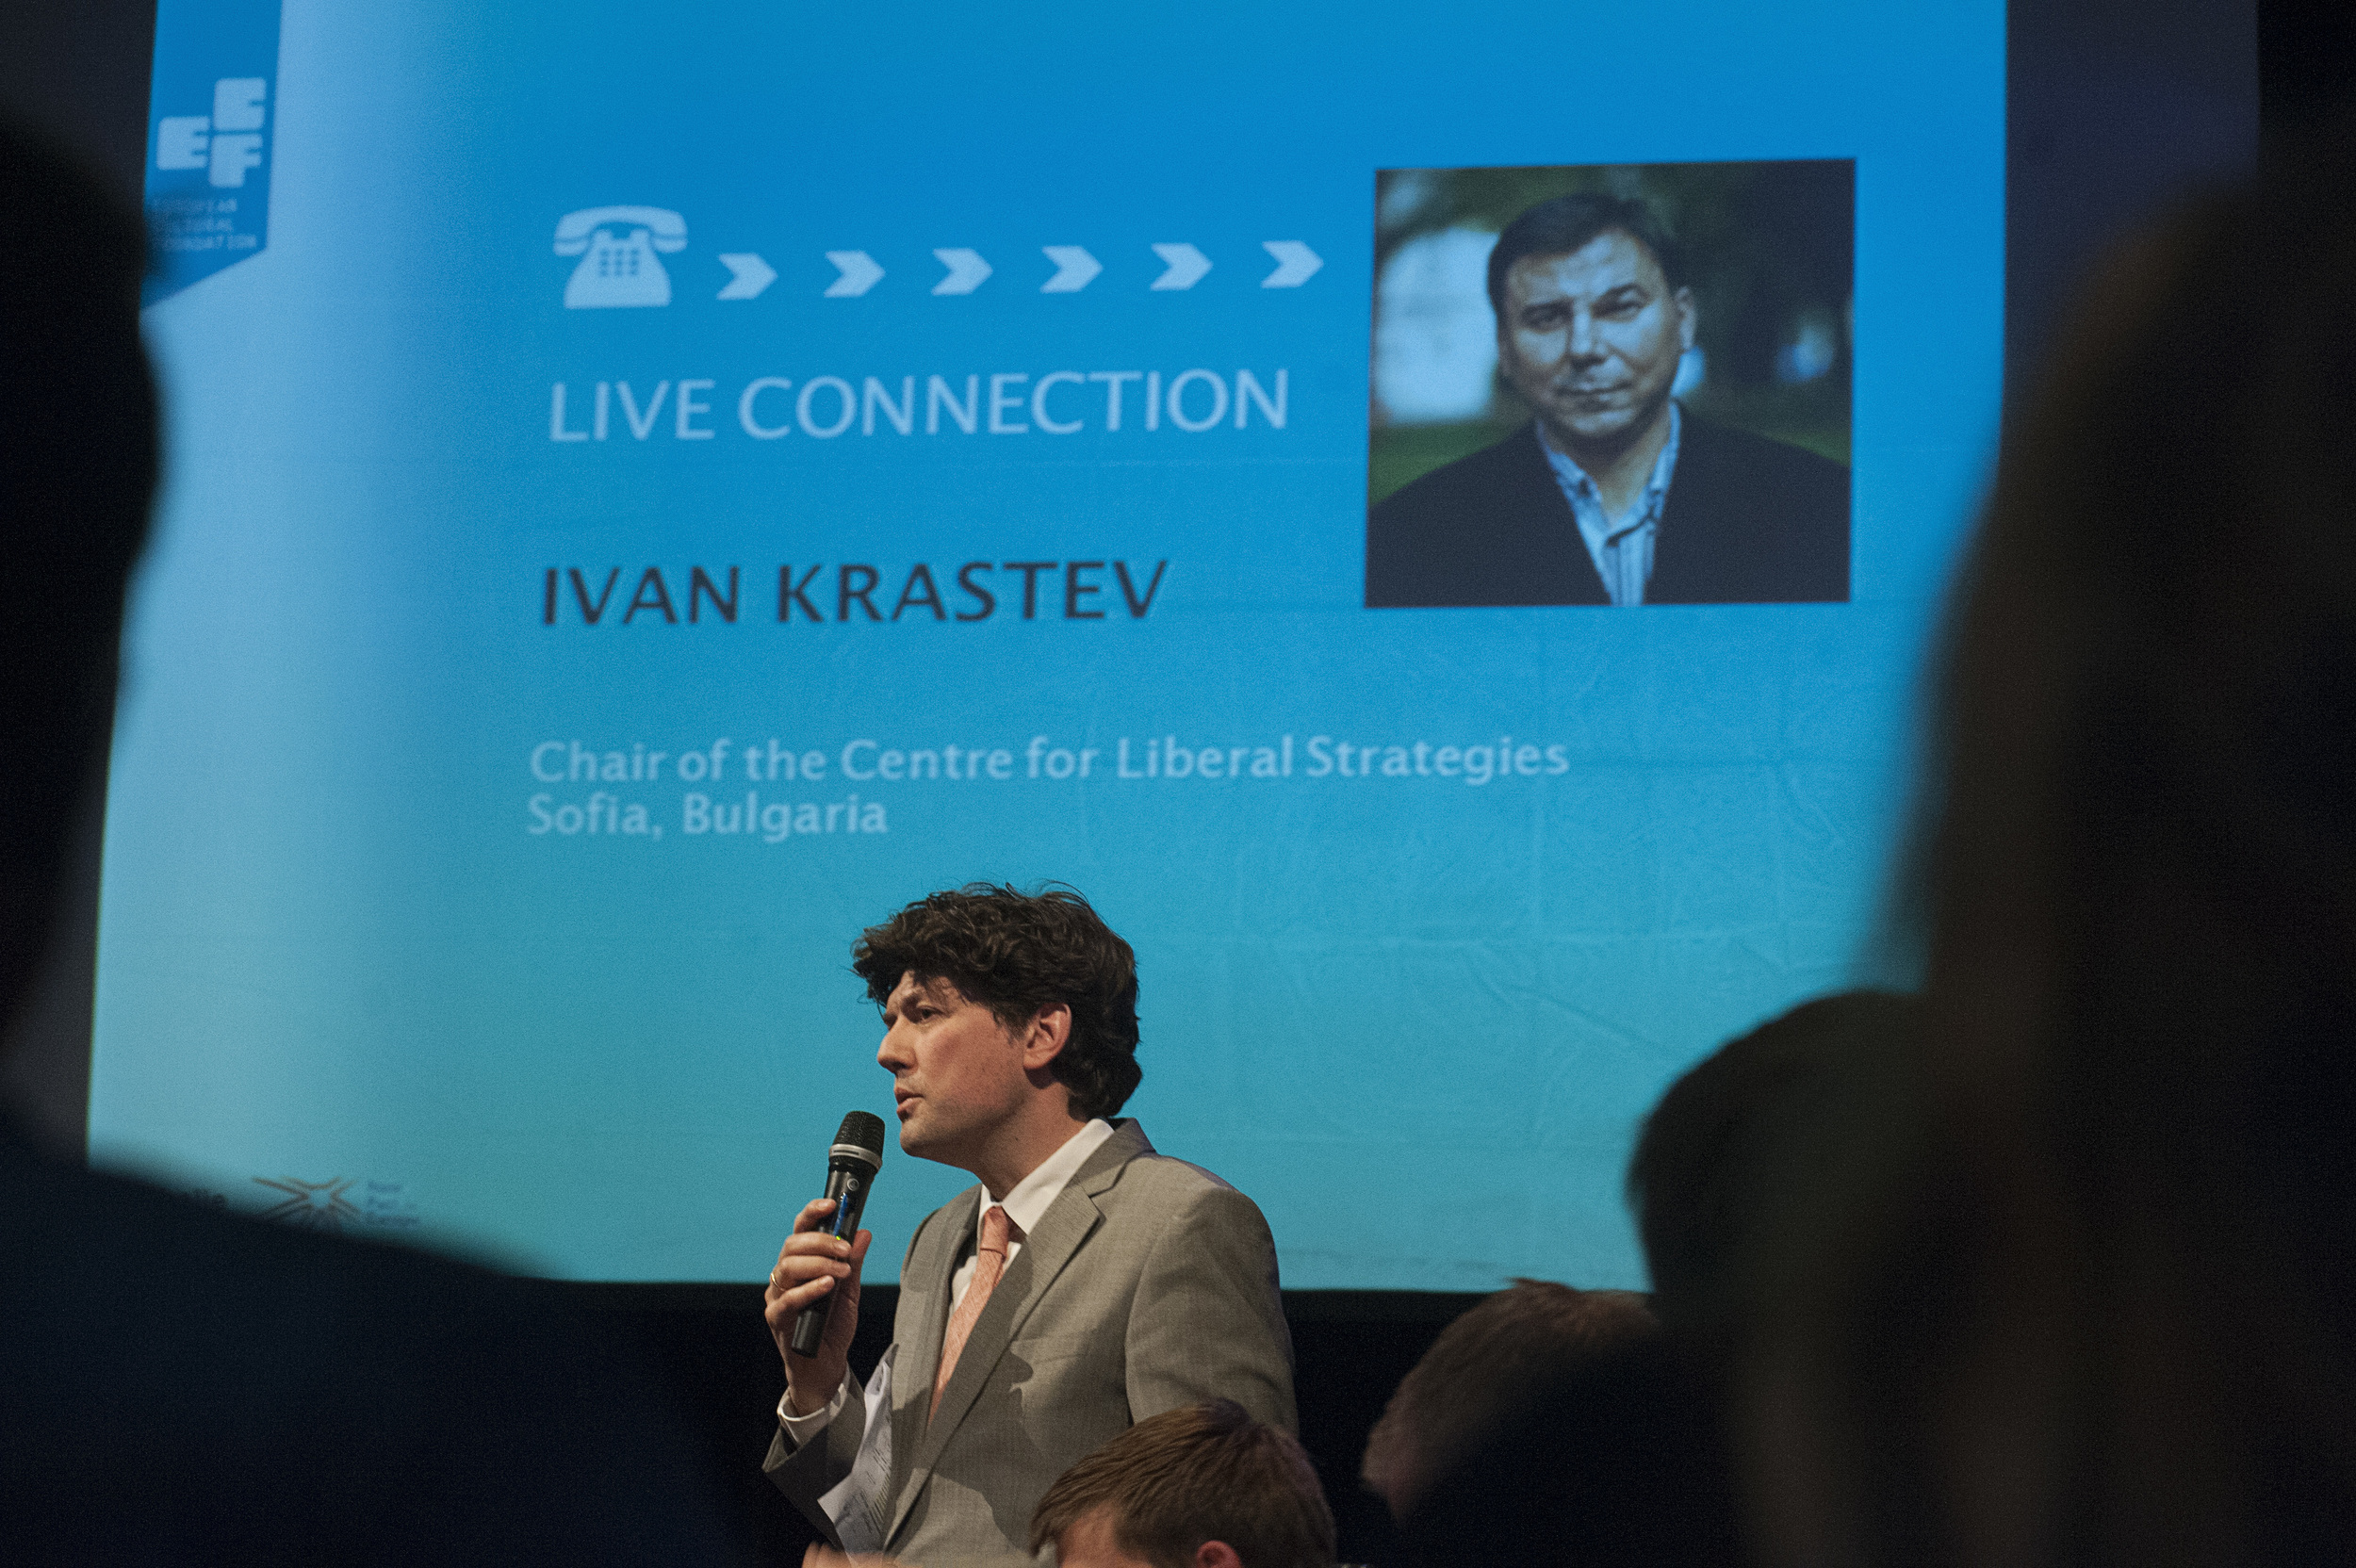  Ivan&nbsp;Krastev joined the debate from Moscow via Skype ©Jan Boeve 